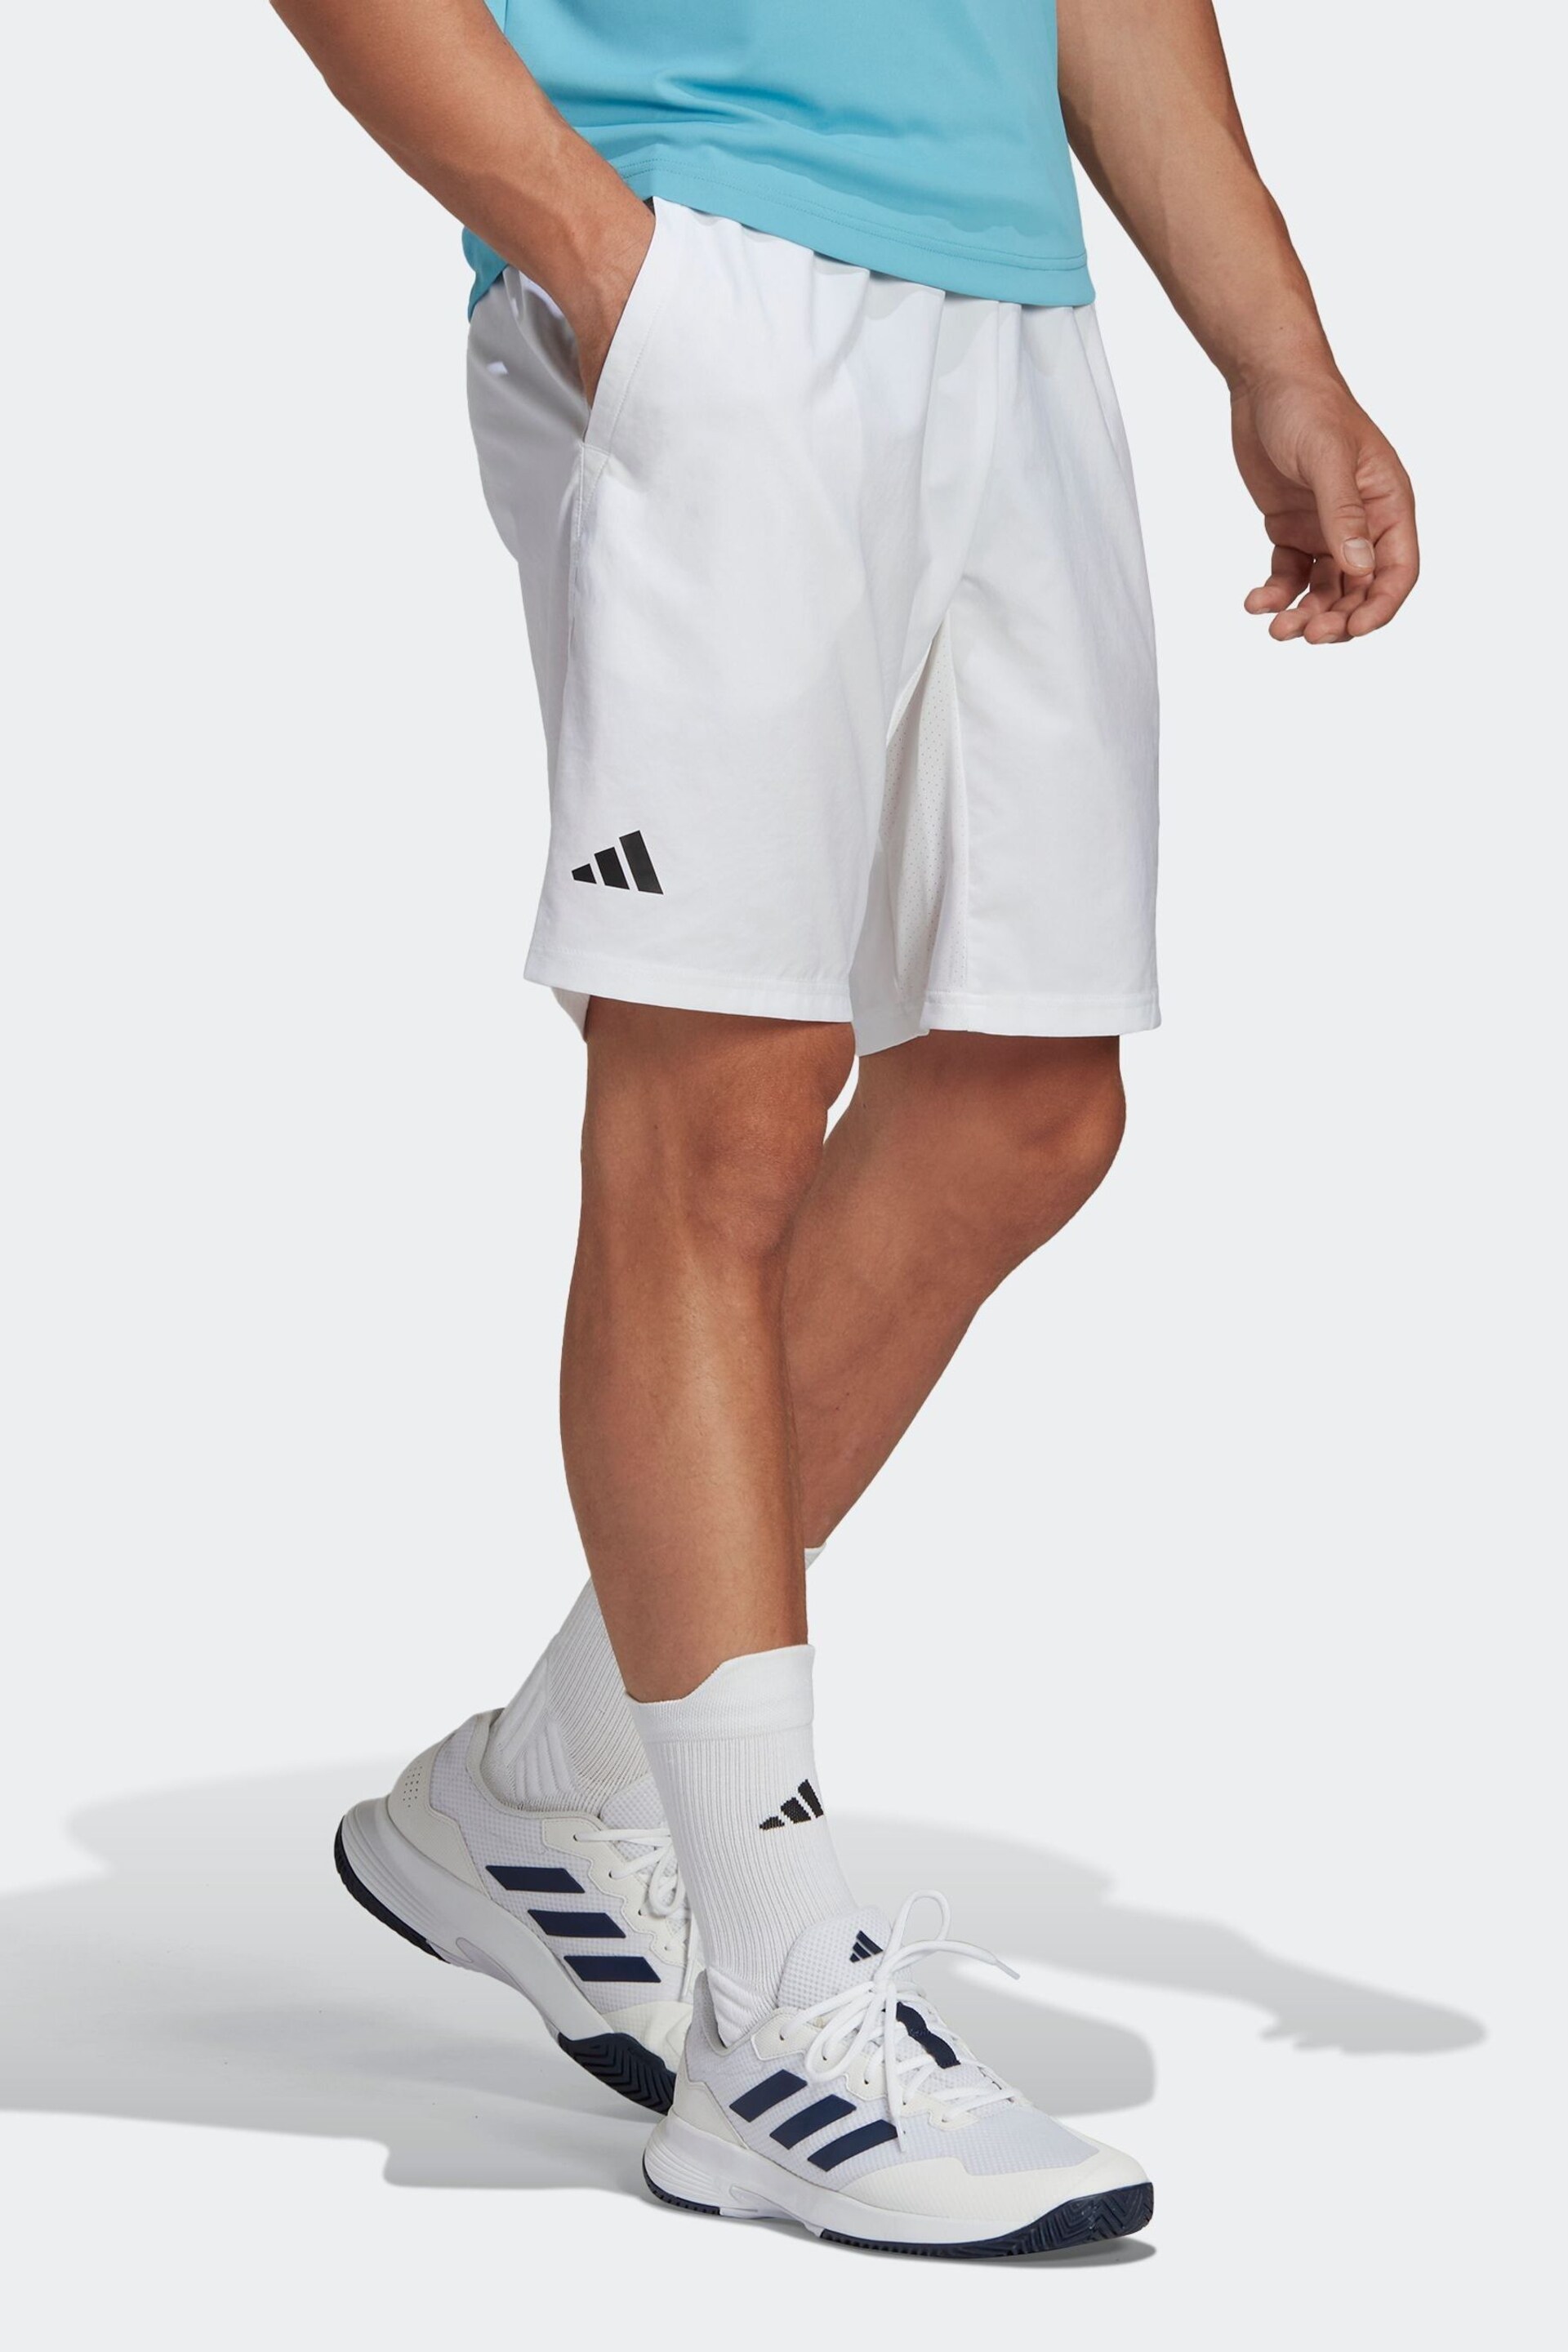 adidas White Club 3-Stripes Tennis Shorts - Image 3 of 6